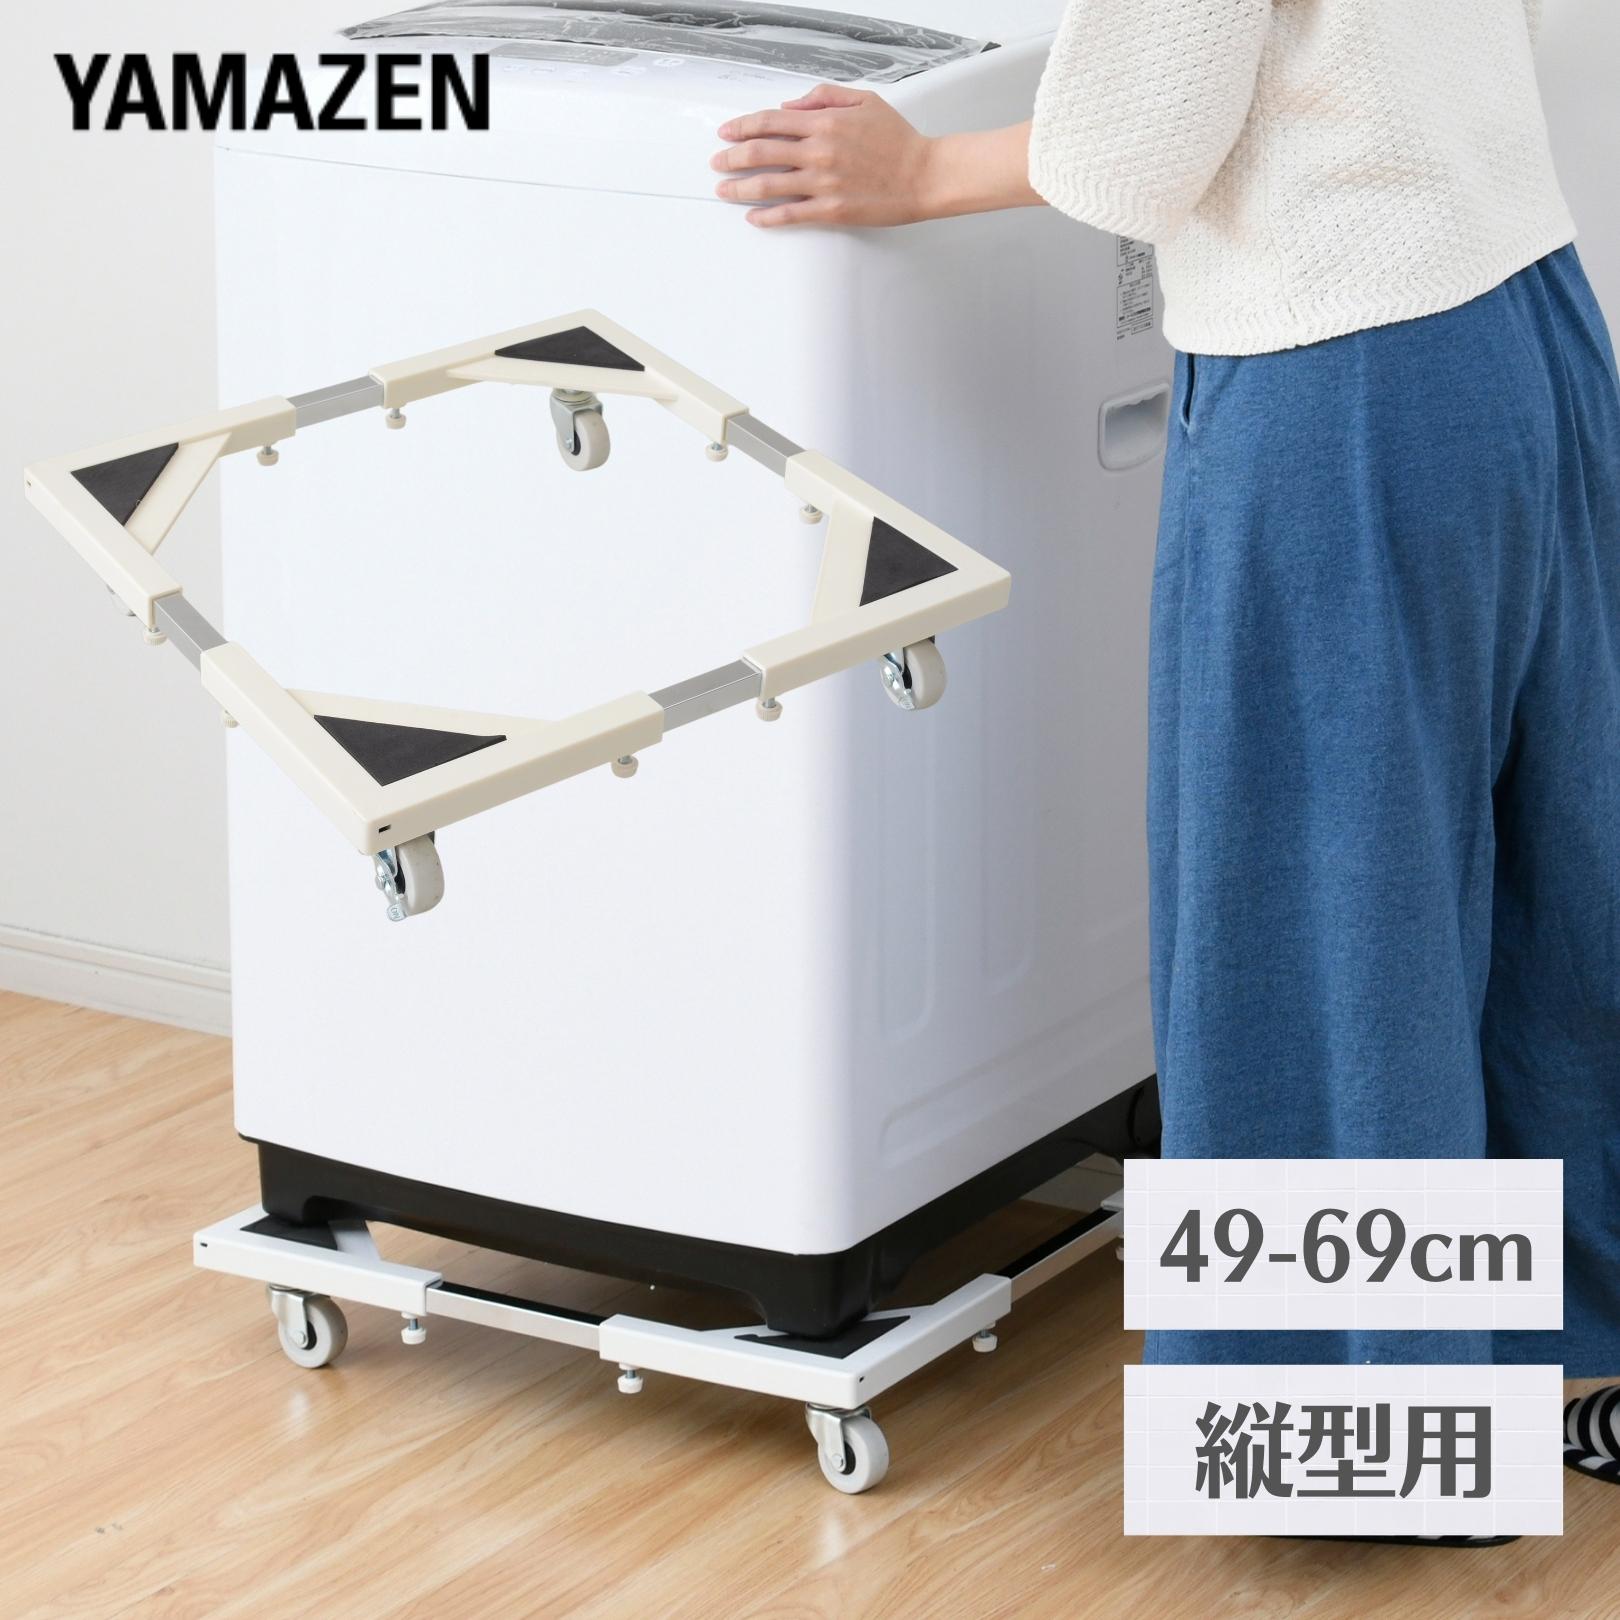 洗濯機 置き台 キャスター付き (たて よこ 49-69cm伸縮式) STD-20 山善 YAMAZEN